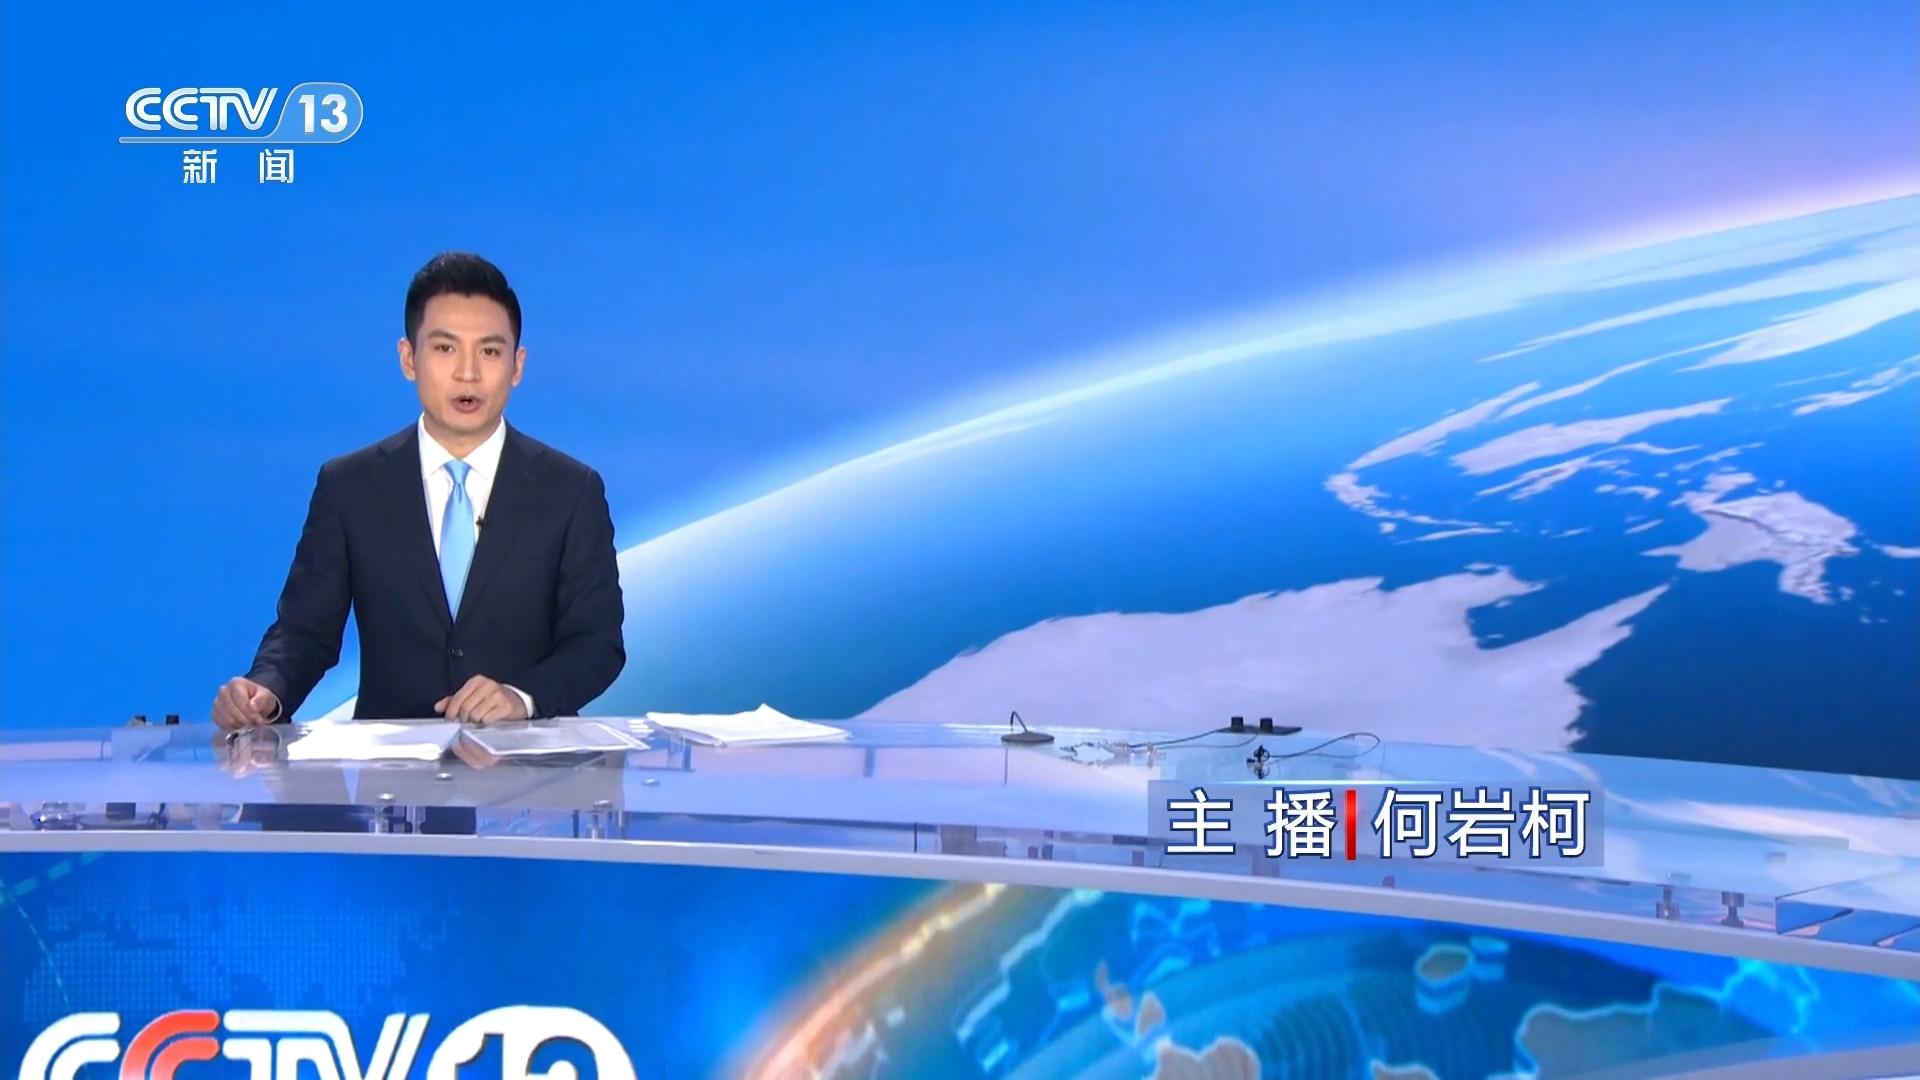 新闻综合频道手机直播回放上海电视台综合新闻频道直播回看